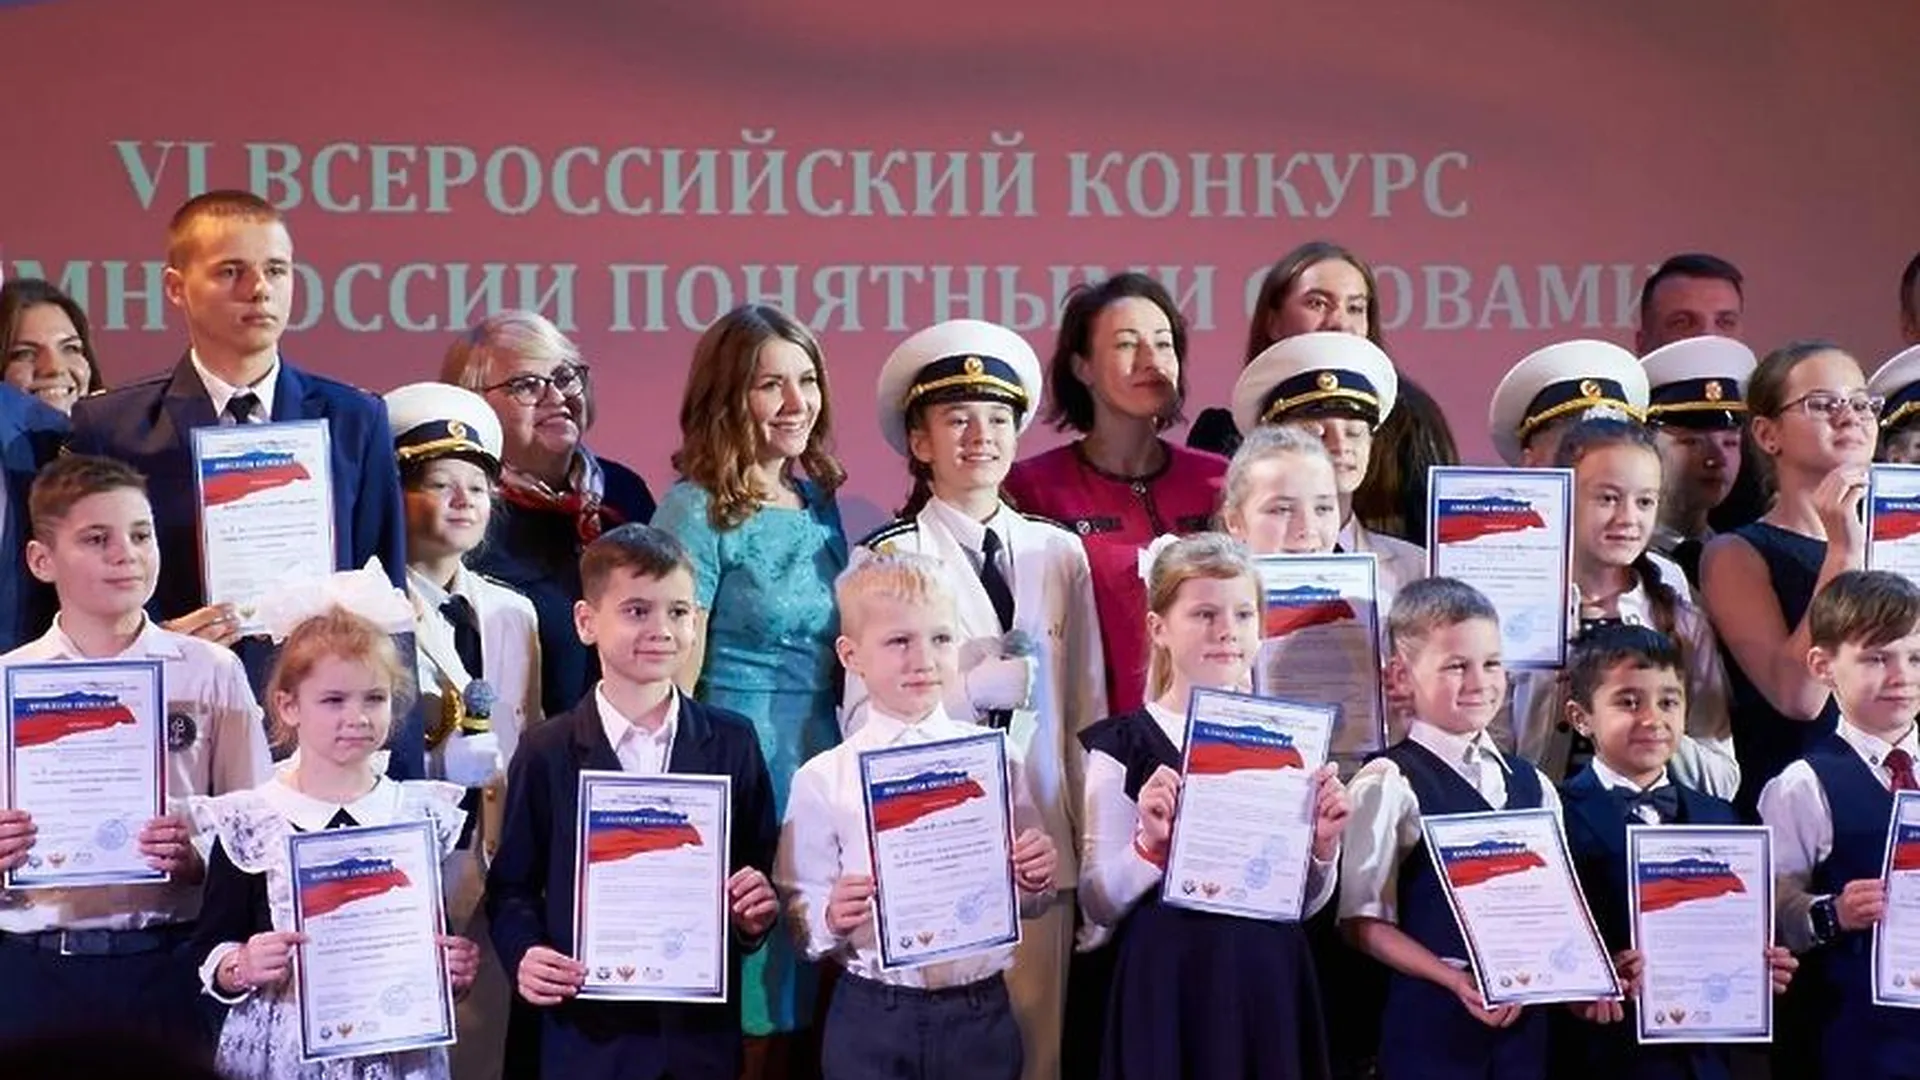 Страница конкурс «Гимн России понятными словами» во «Вконтакте»